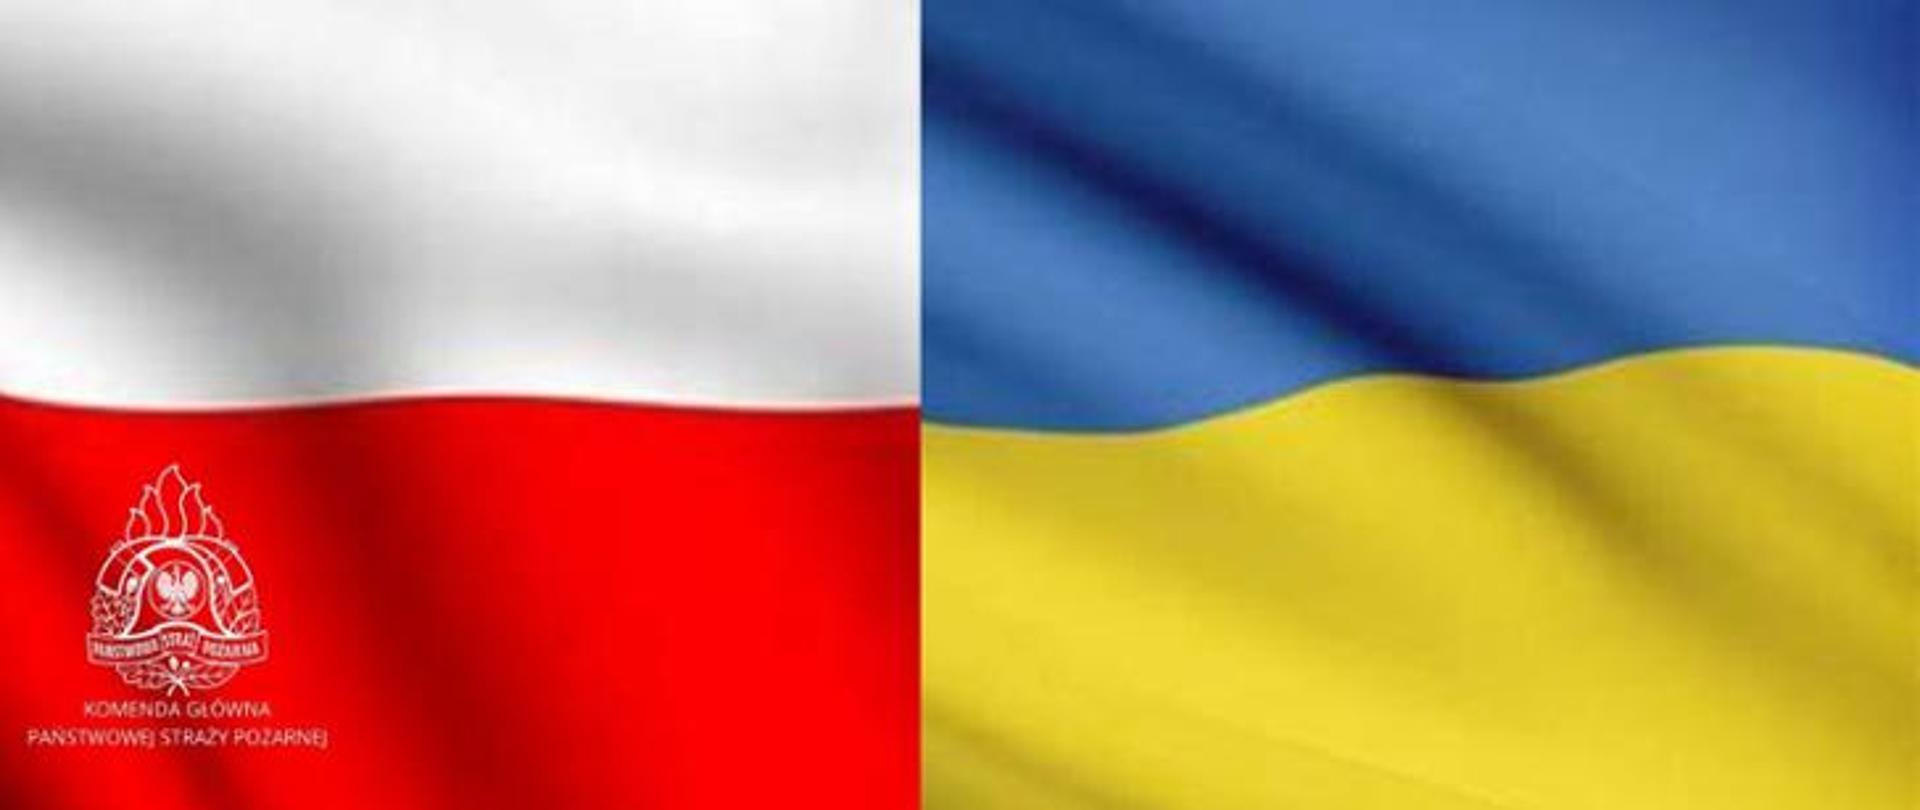 Flaga Rzeczpospolitej Polskiej po lewej oraz Ukrainy po prawej